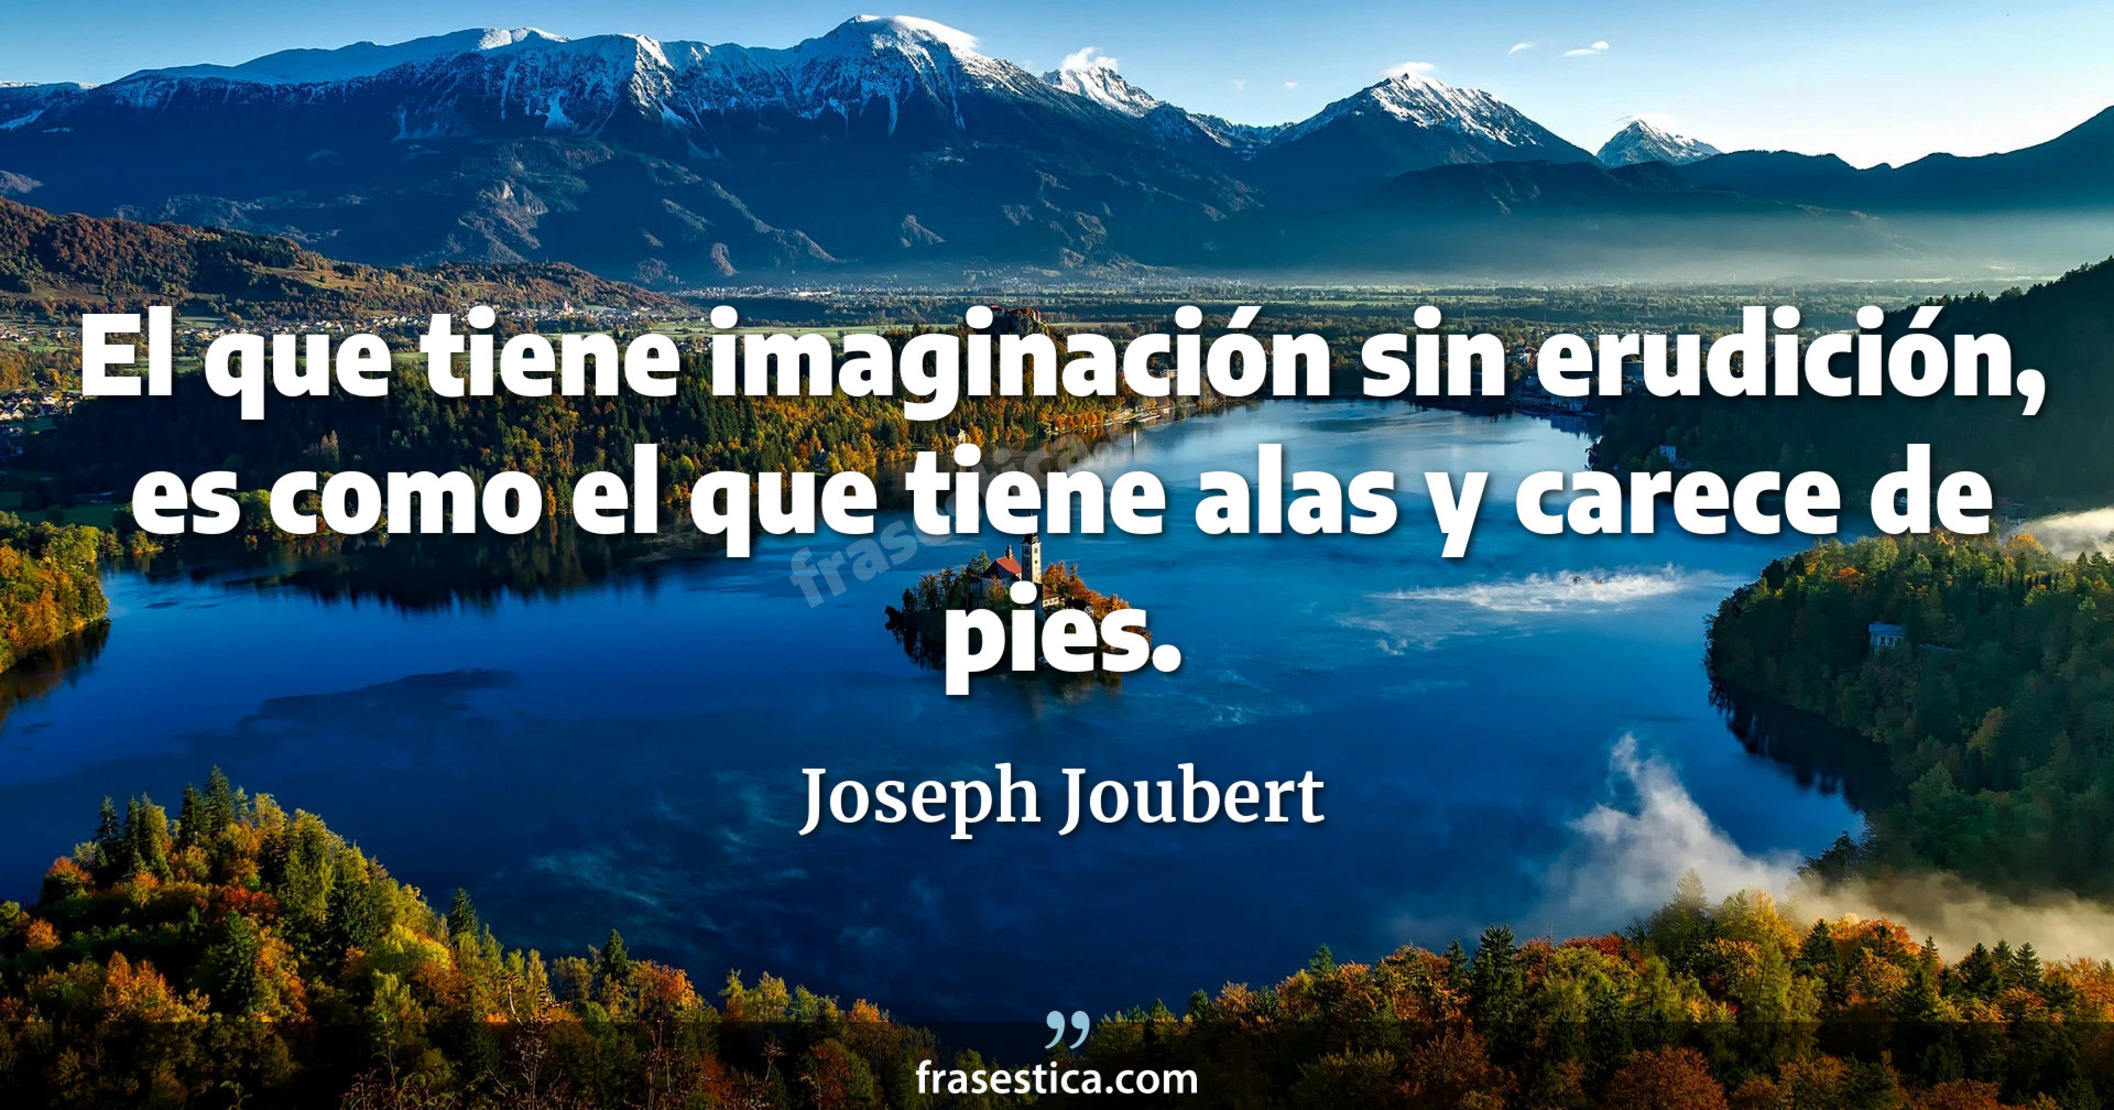 El que tiene imaginación sin erudición, es como el que tiene alas y carece de pies. - Joseph Joubert